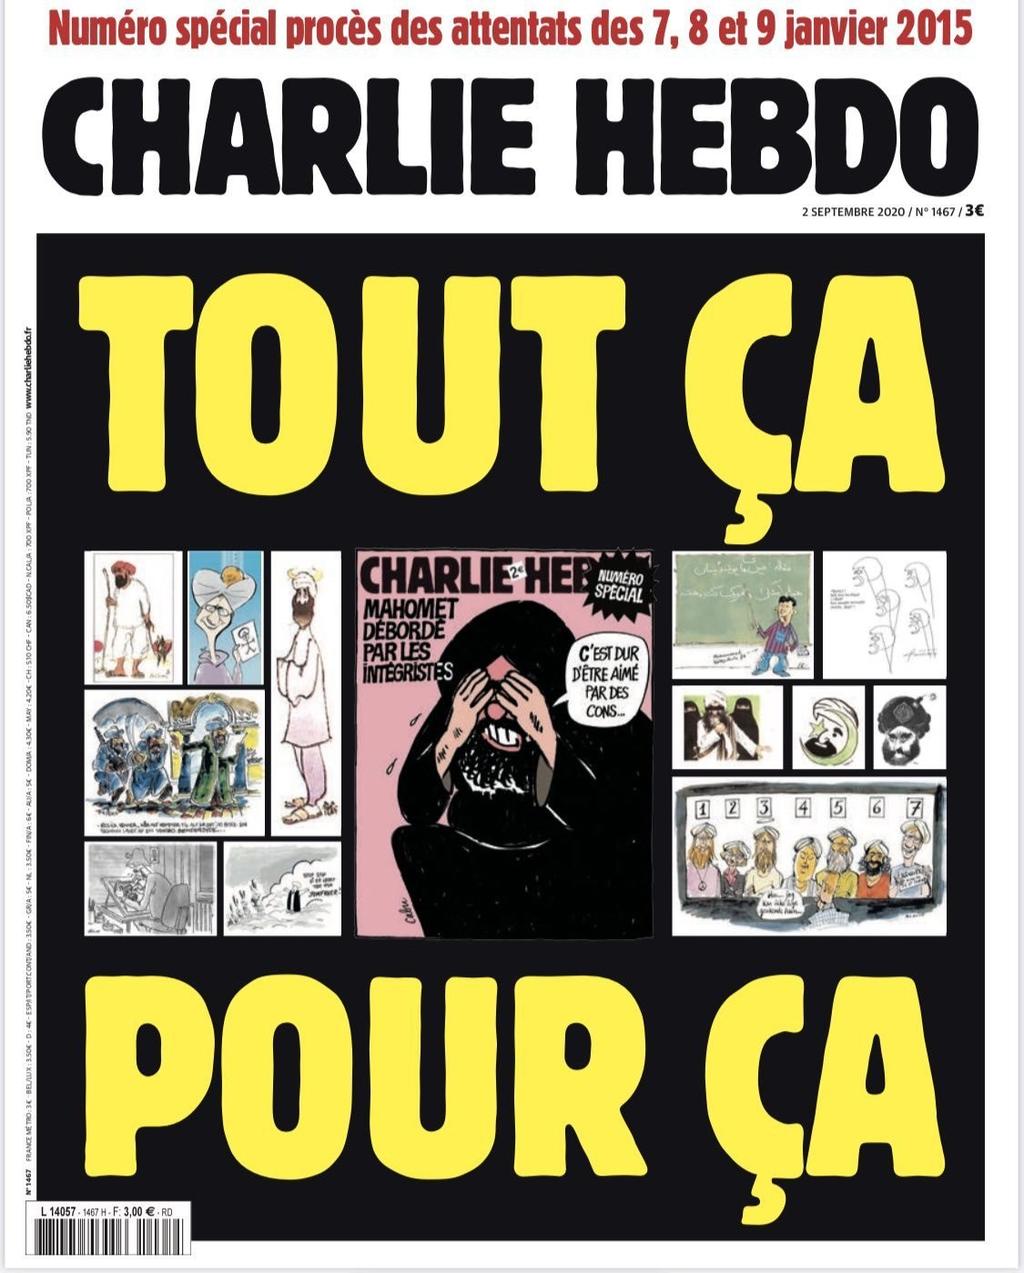 Publicará Charlie Hebdo portada de Mahoma por la que atacaron los yihadistas